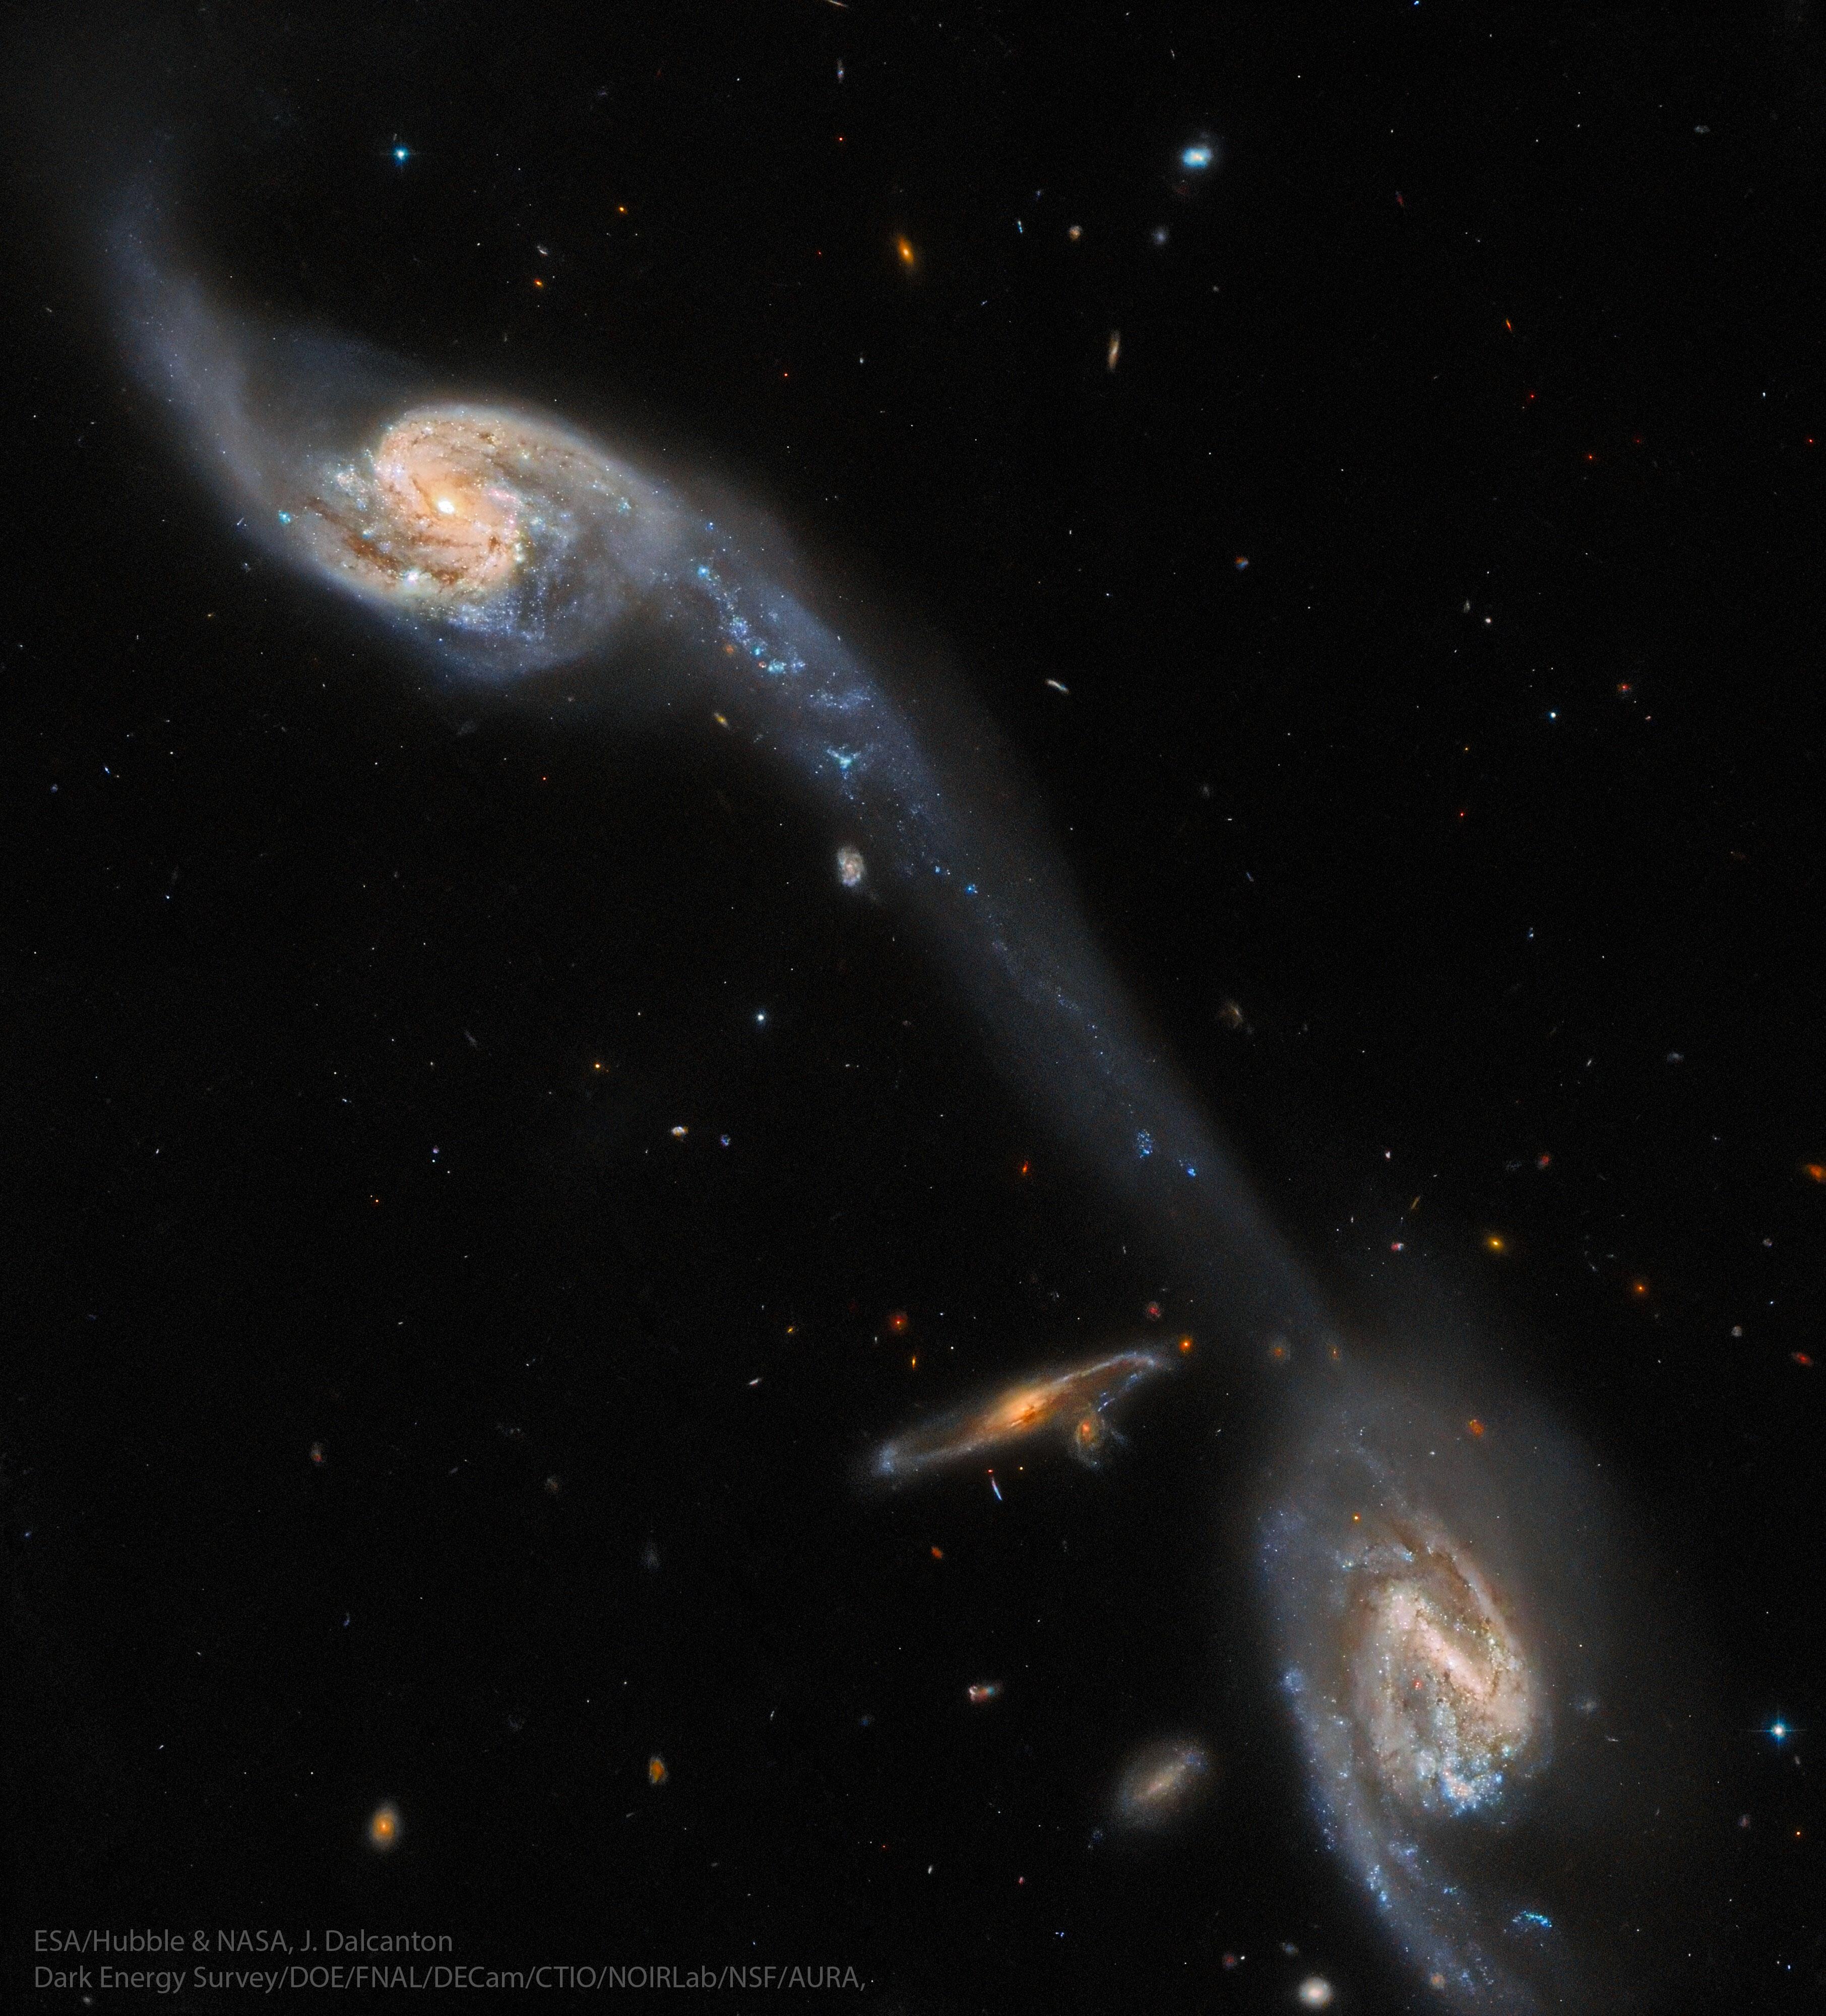 عدّة مجرّاتٍ حلزونيّة تتفاعل فيما بينها مع جسرٍ من النجوم والغاز يربط المجرَّتَين الأكثر سطوعاً.